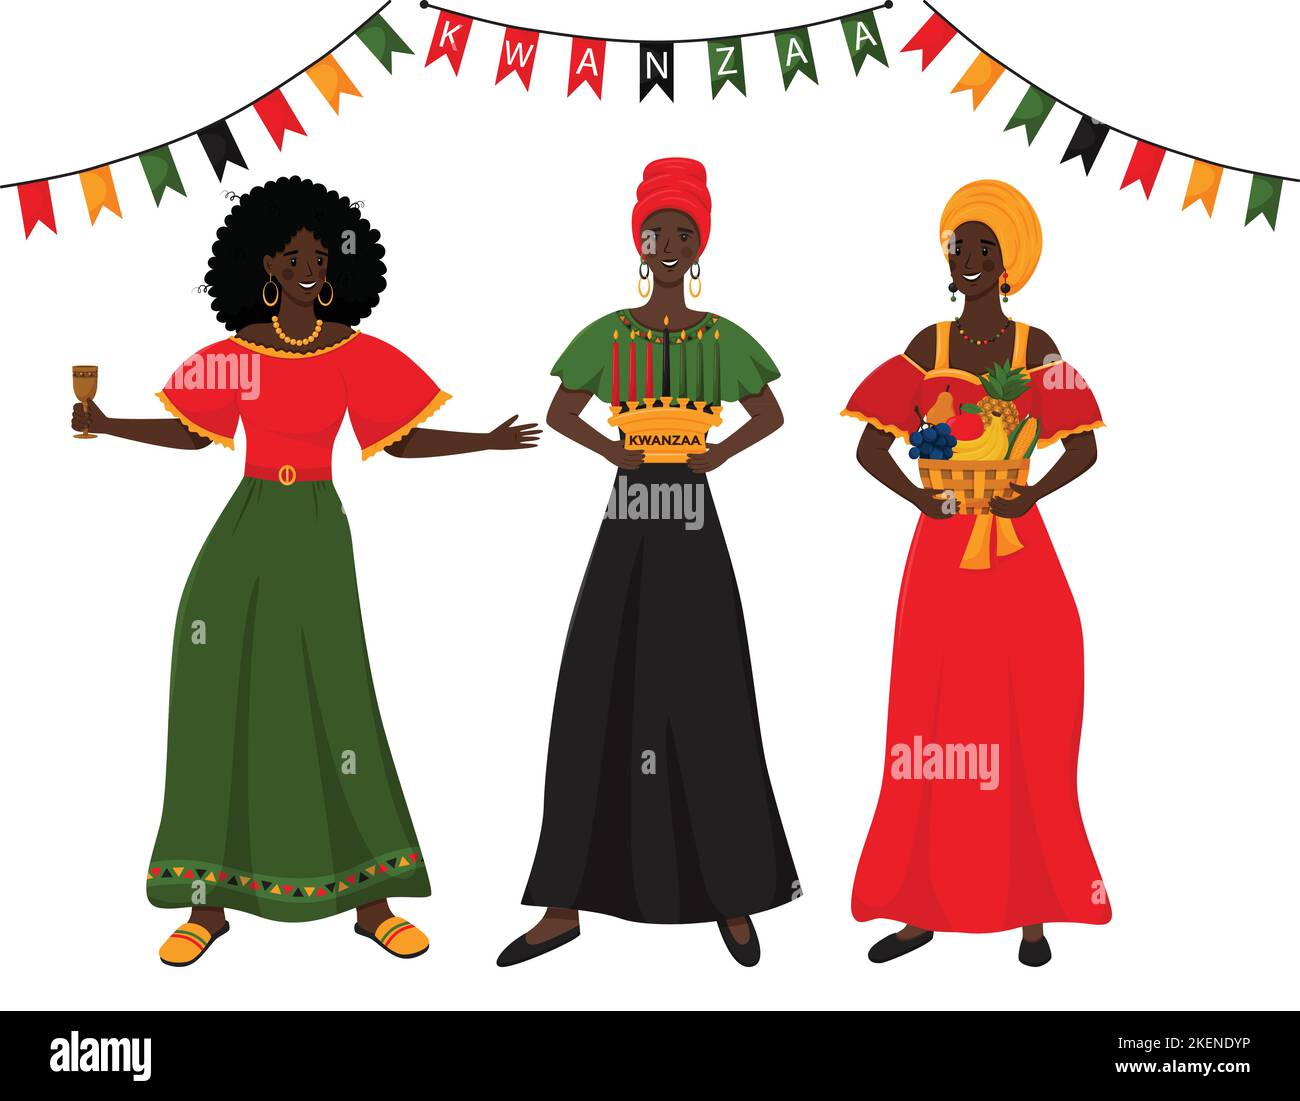 Trois jeunes femmes africaines tenant entre leurs mains des symboles traditionnels de Kwanzaa - coupe de l'unité - Kikombe Cha Umoja, panier de fruits - Mazao, bougie ho Illustration de Vecteur